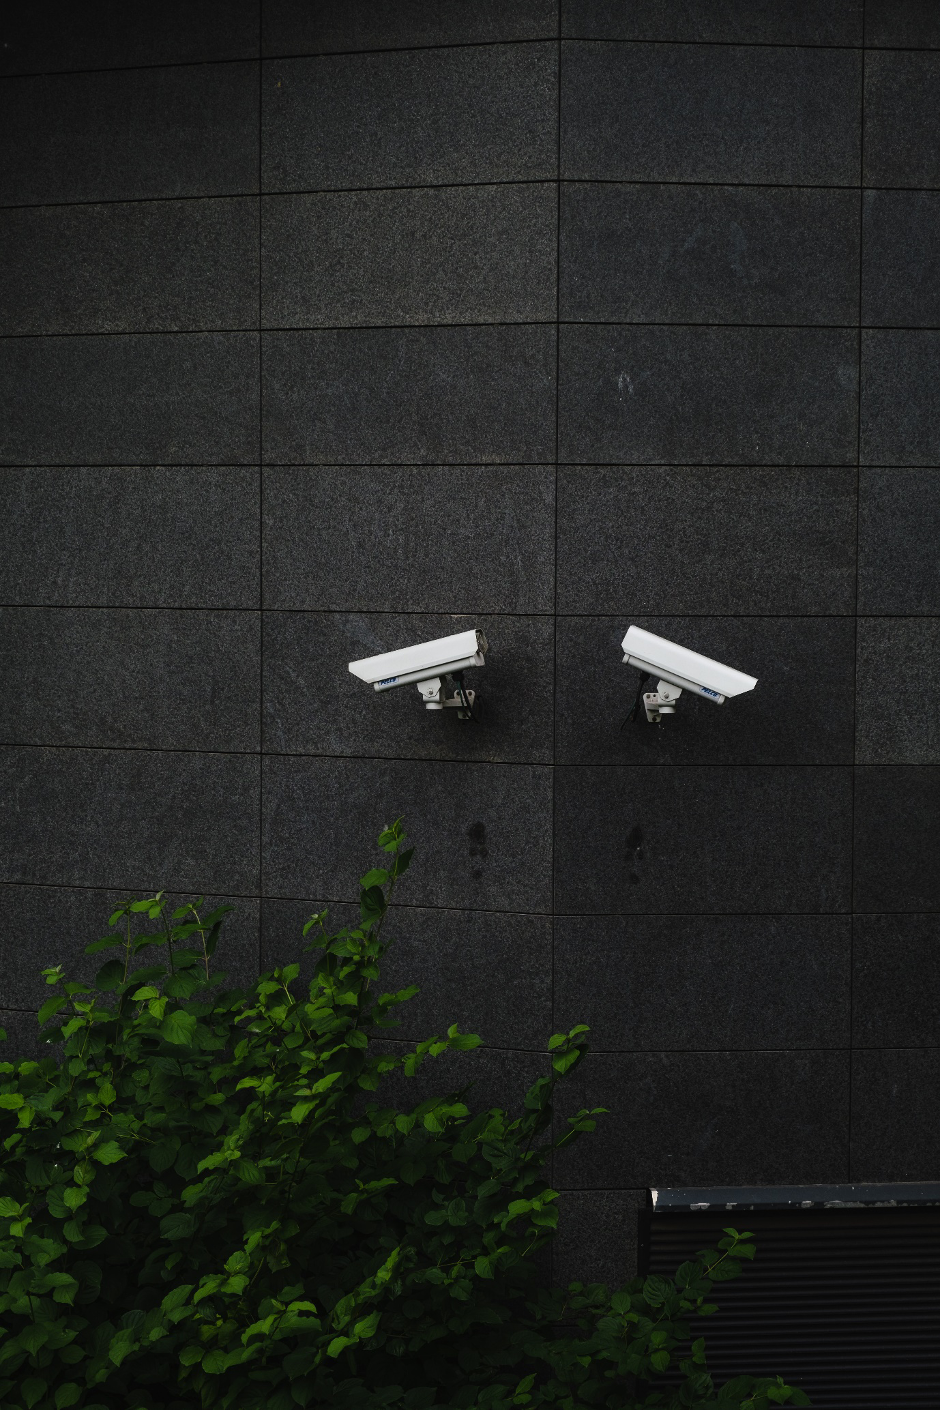 Do security cameras help prevent crime?